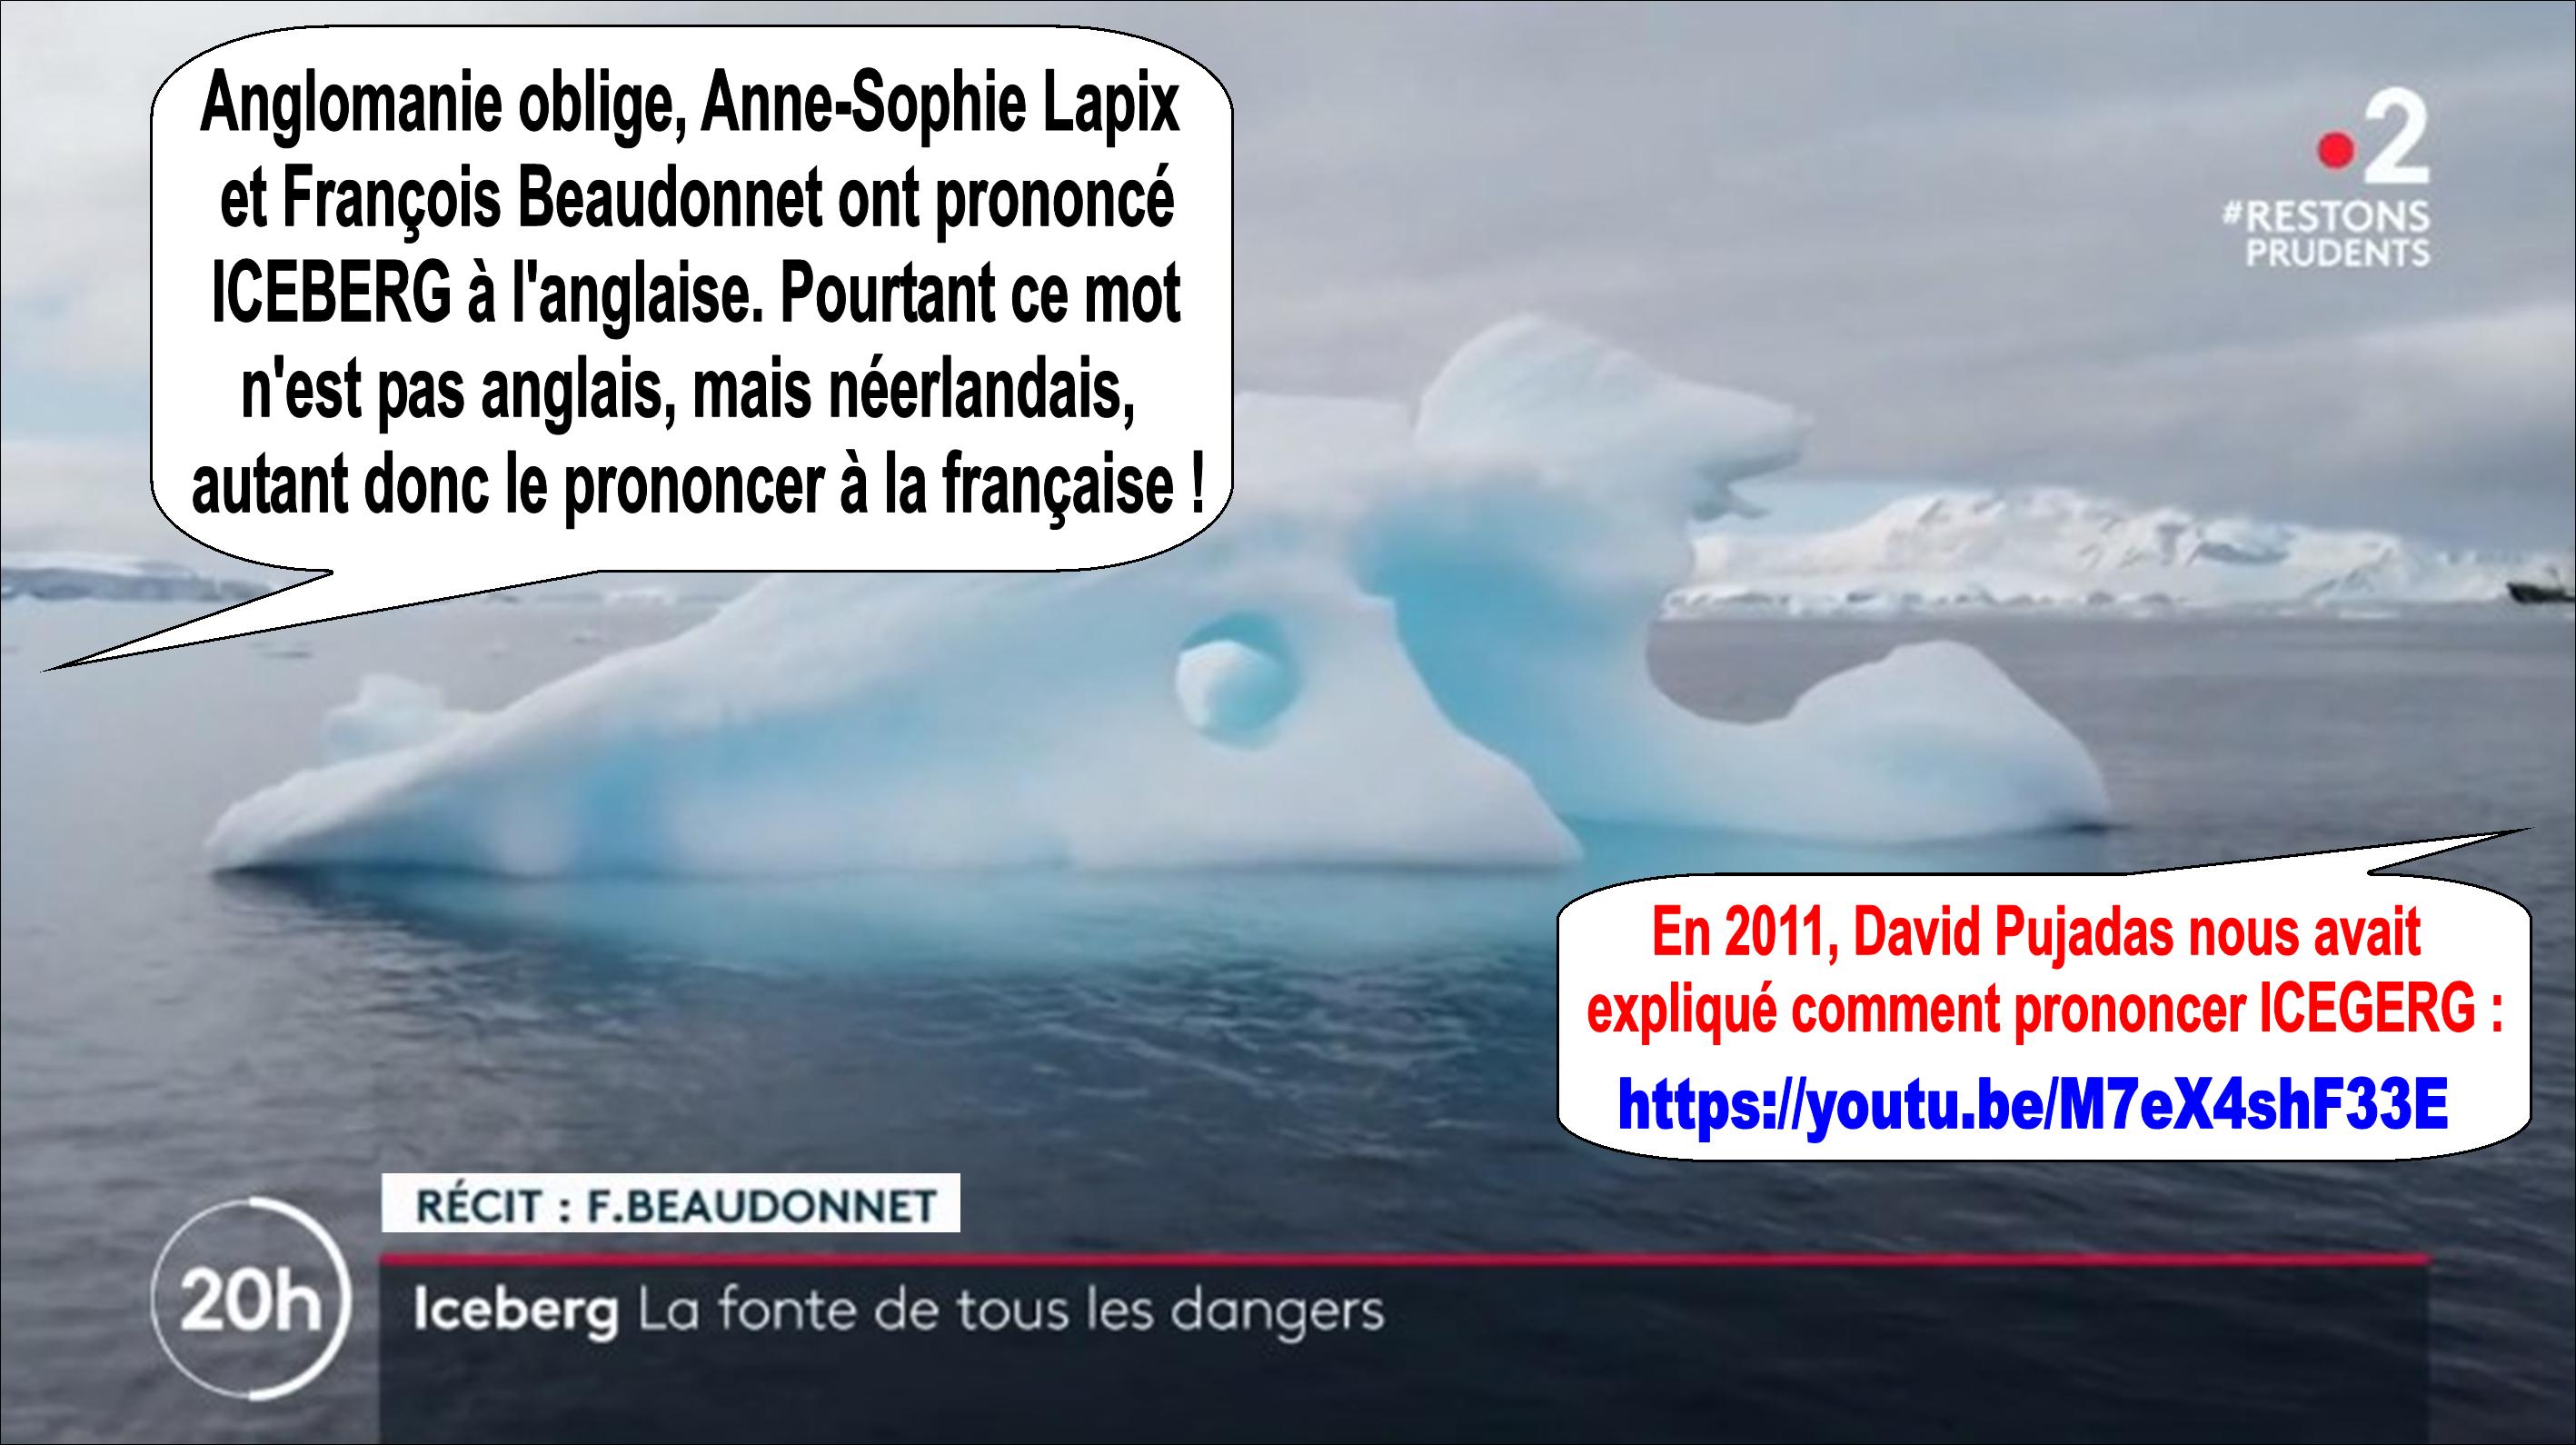 Anne-Sophie Lapix, François Beaudonnet, David Pujadas et le mot ICEBERG